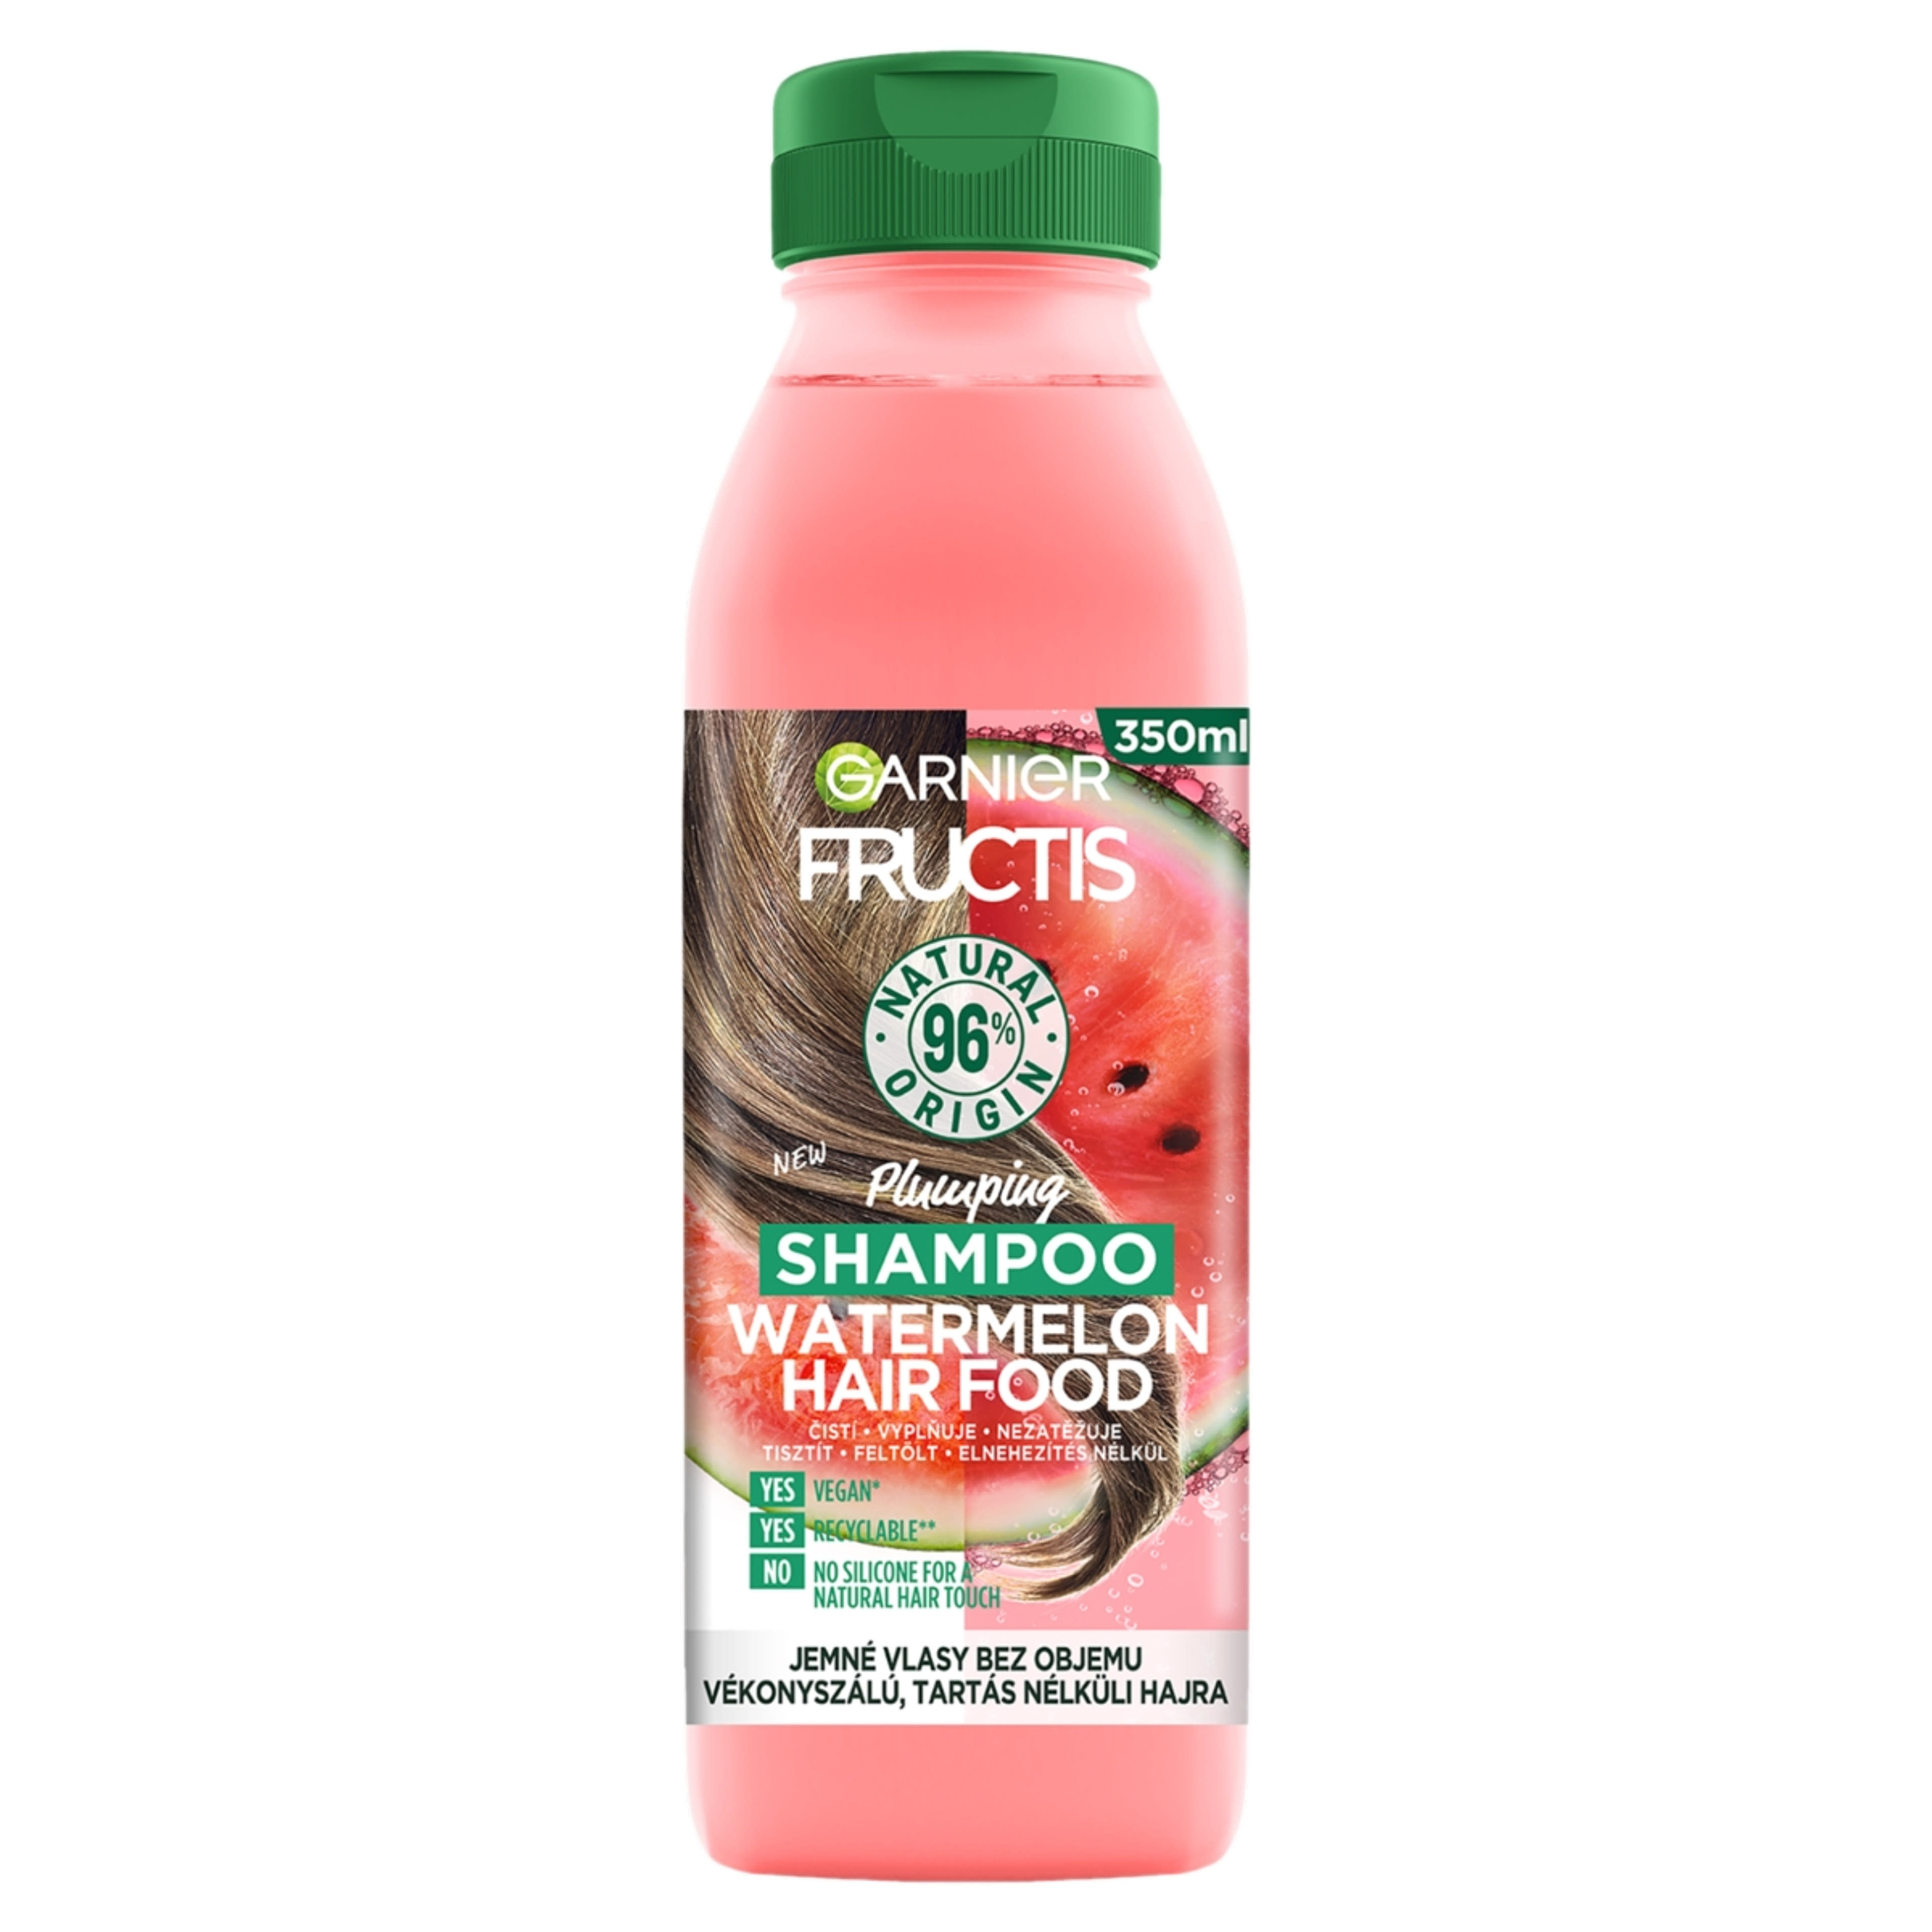 Garnier Fructis Hair Food watermelon sampon - 350 ml